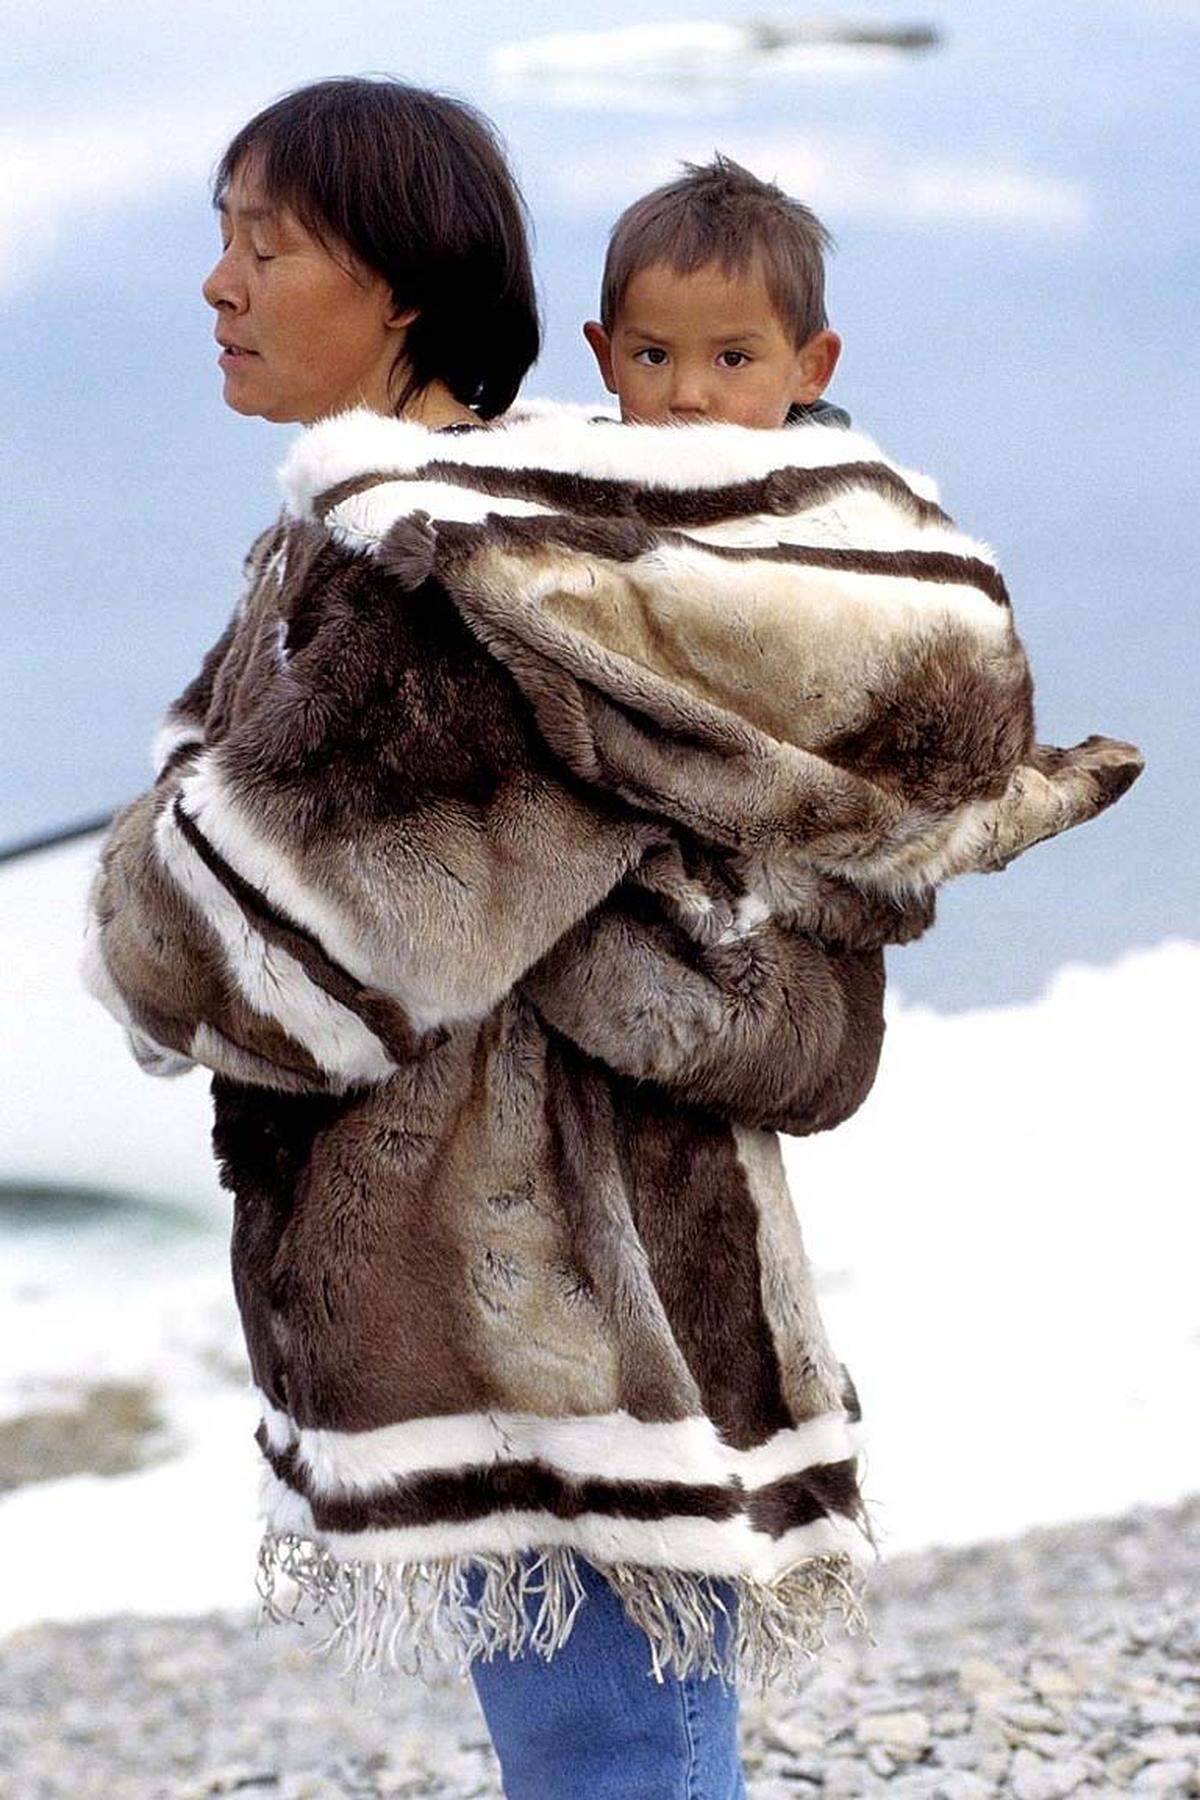 Inuit-Babys werden für die ersten ein oder zwei Jahre ihres Lebens von ihren Müttern in einem amautik getragen. Traditionell wurde ein amautik aus Karibufell gemacht, wobei das Fell nach innen zeigte damit das Baby in dessen Polsterung und Wärme lag. Heute werden sie auch aus Düffel und anderen Materialien hergestellt.